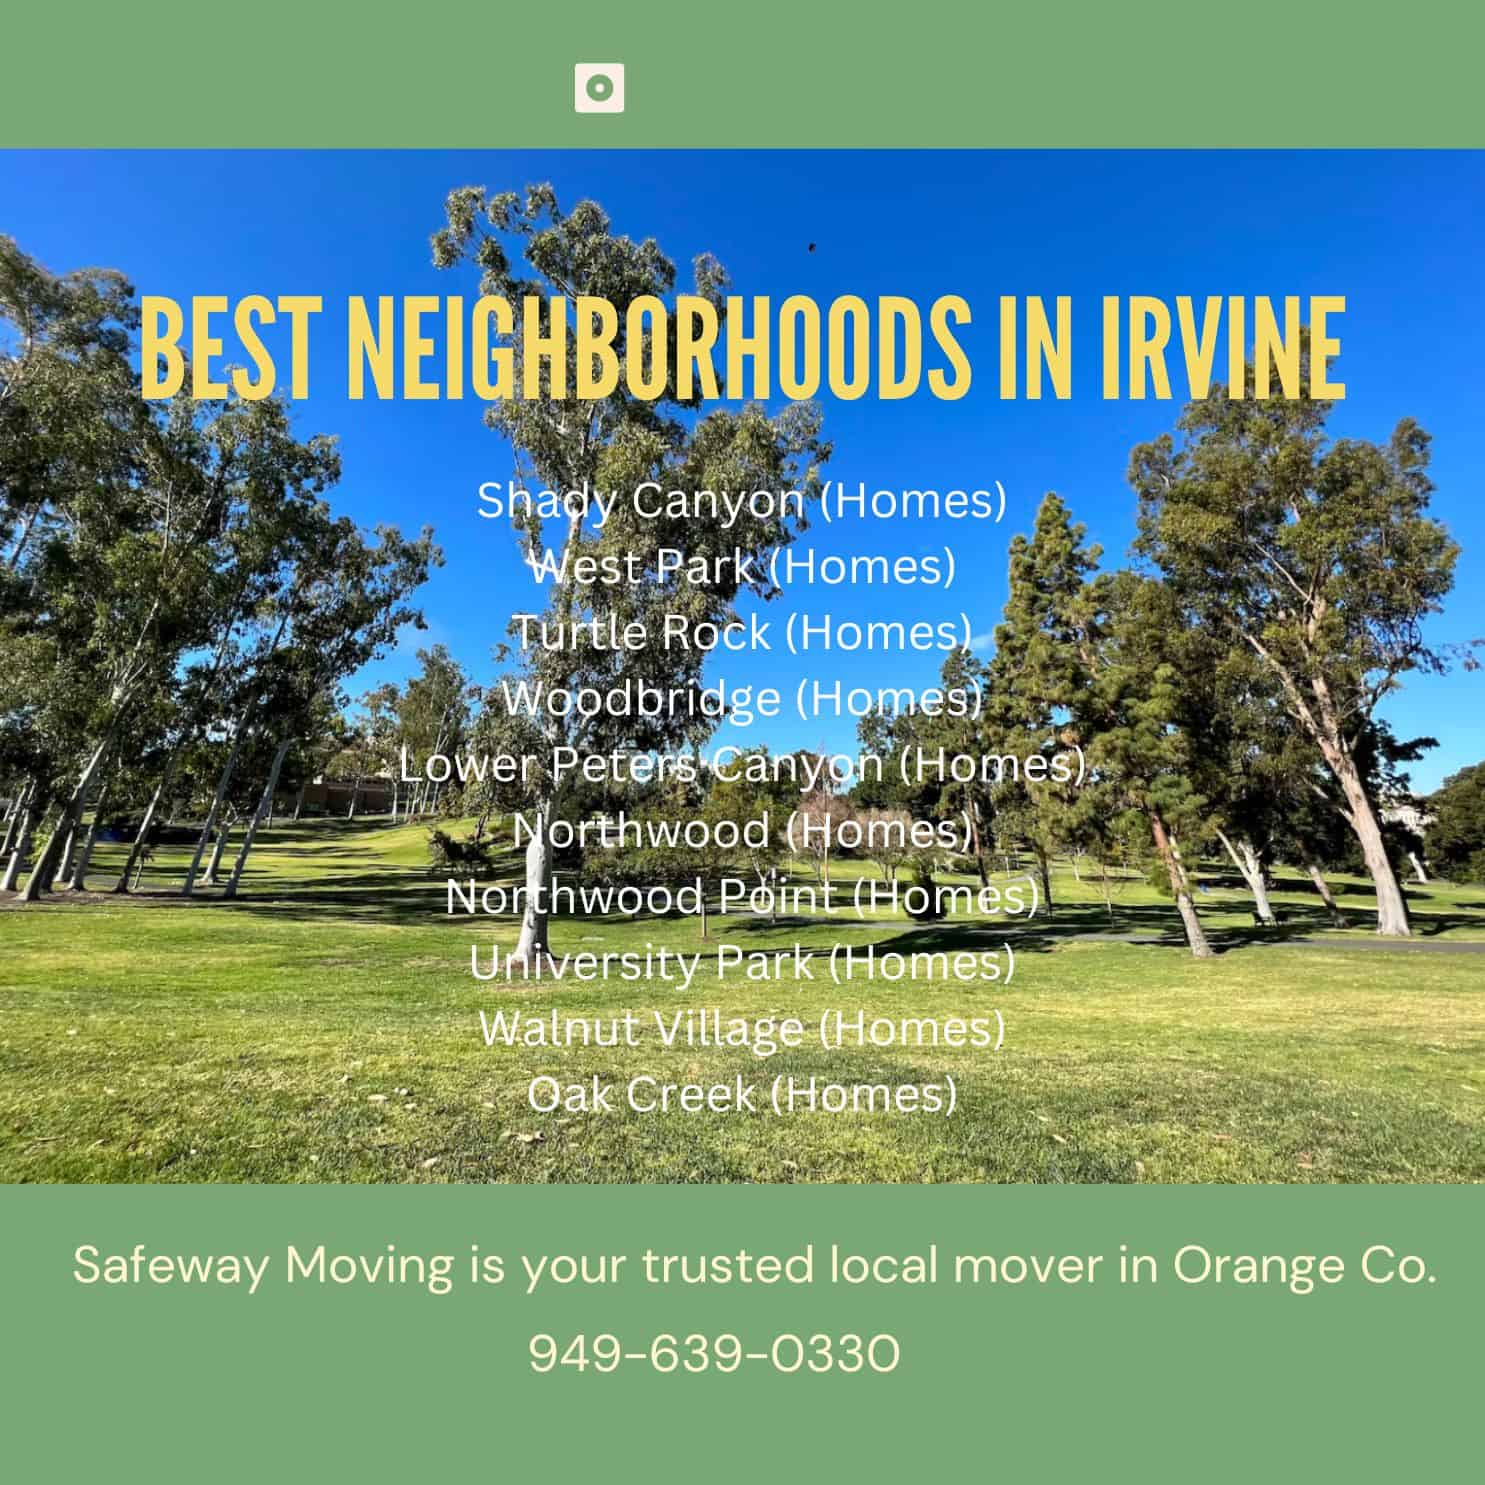 top neighborhoods to move in irvine